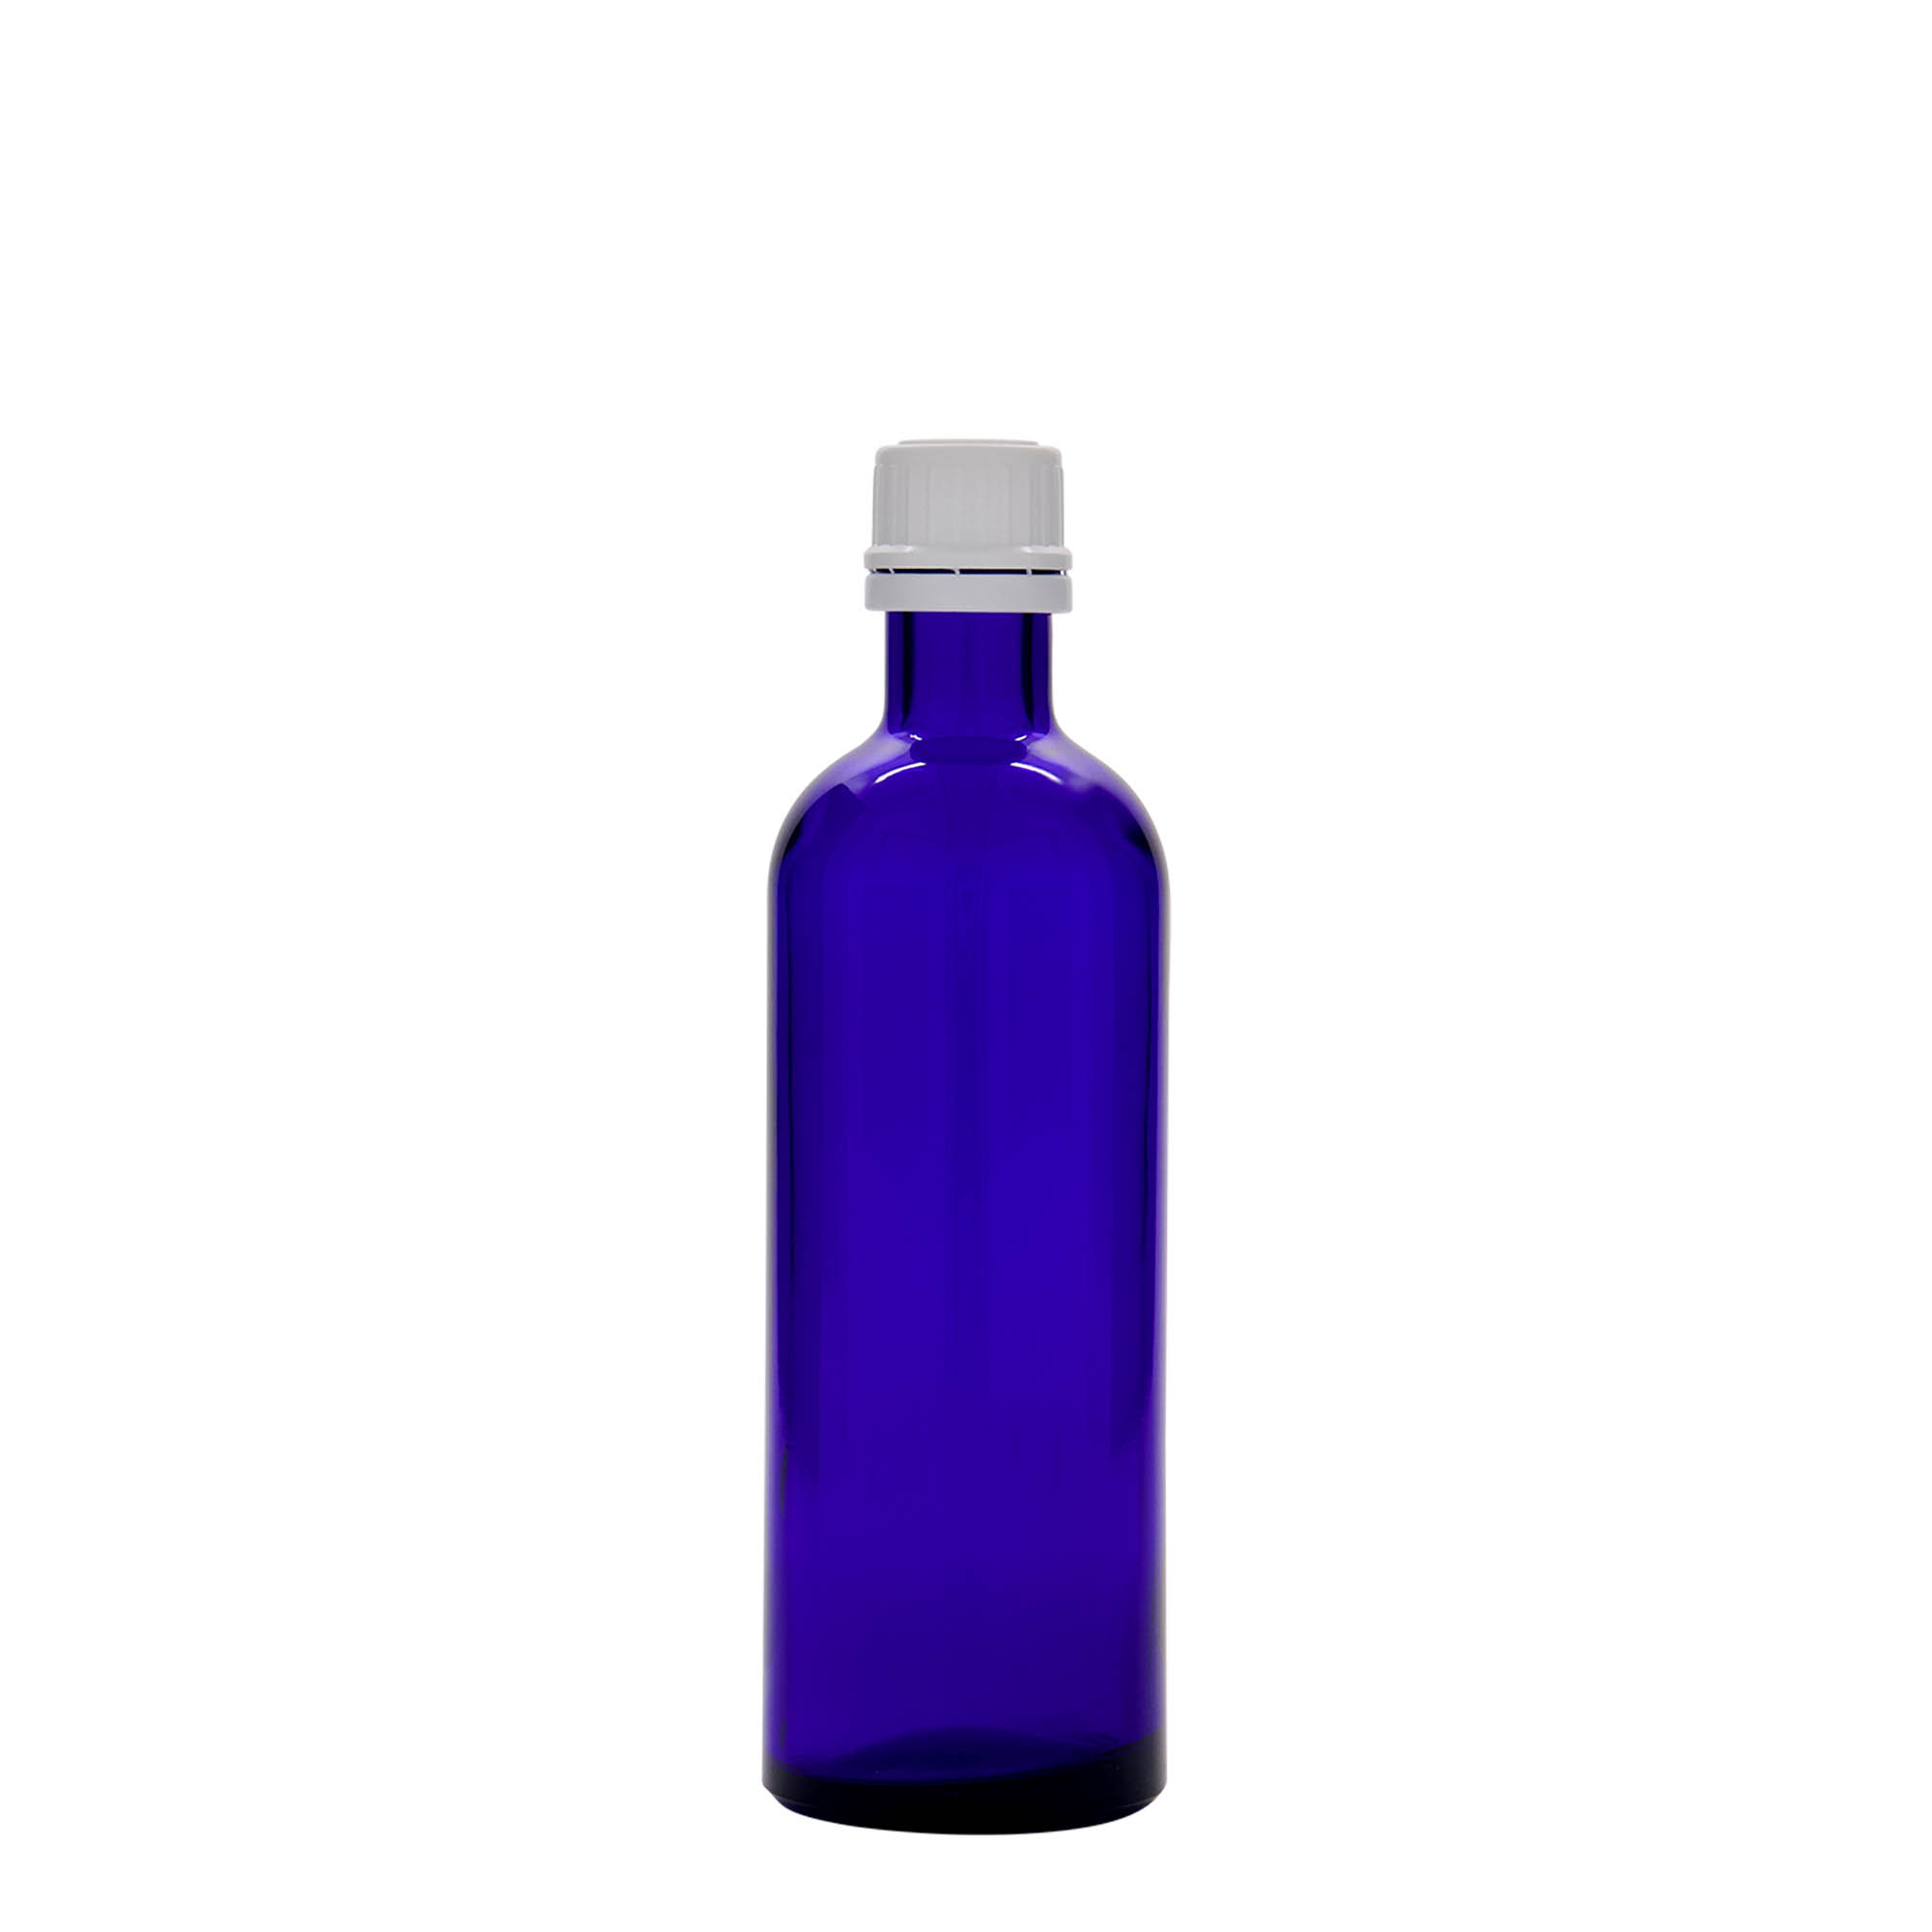 Lékovka 200 ml, sklo, královská modř, ústí: DIN 22